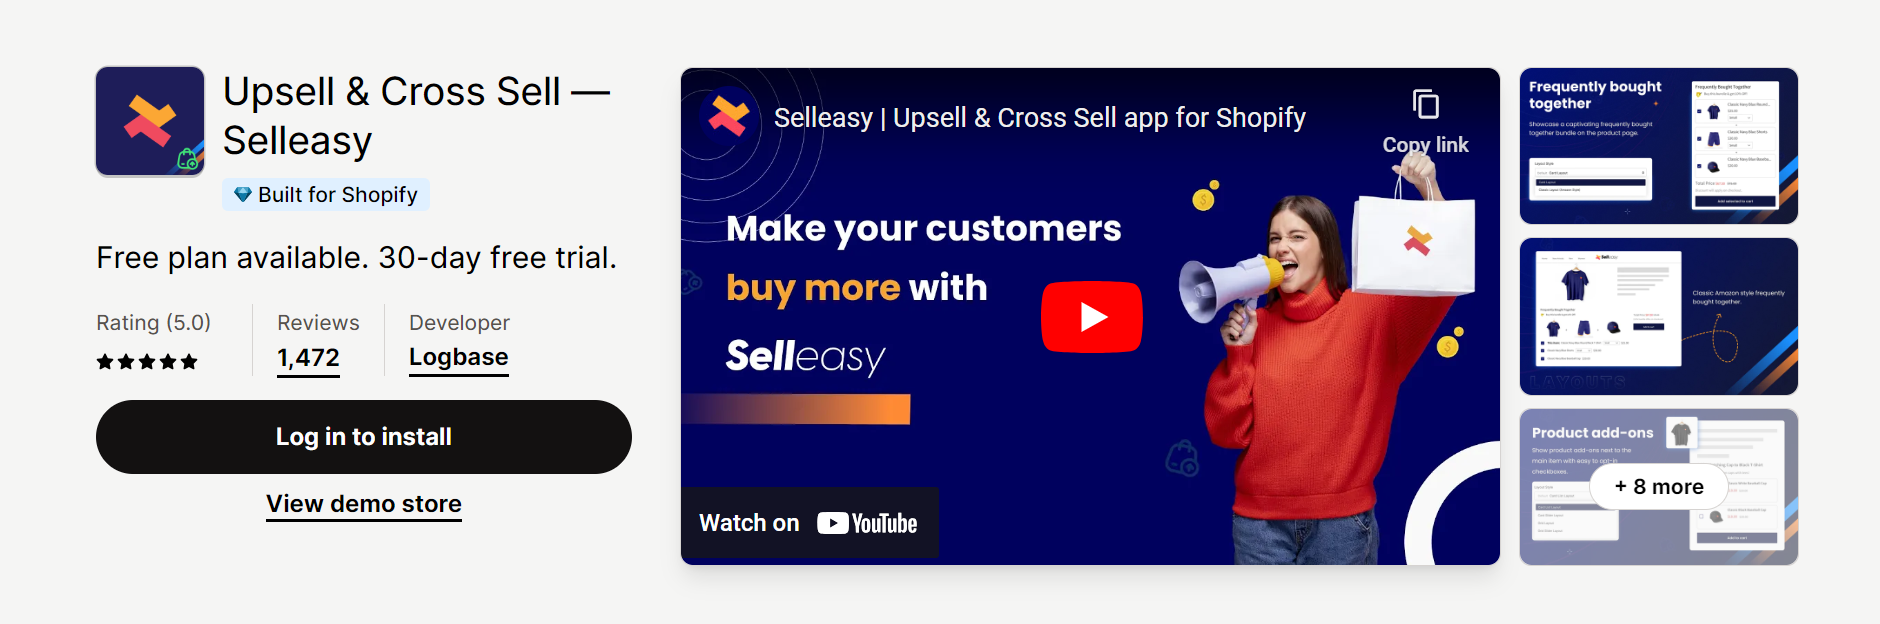 Upsell & Cross Sell — Selleasy